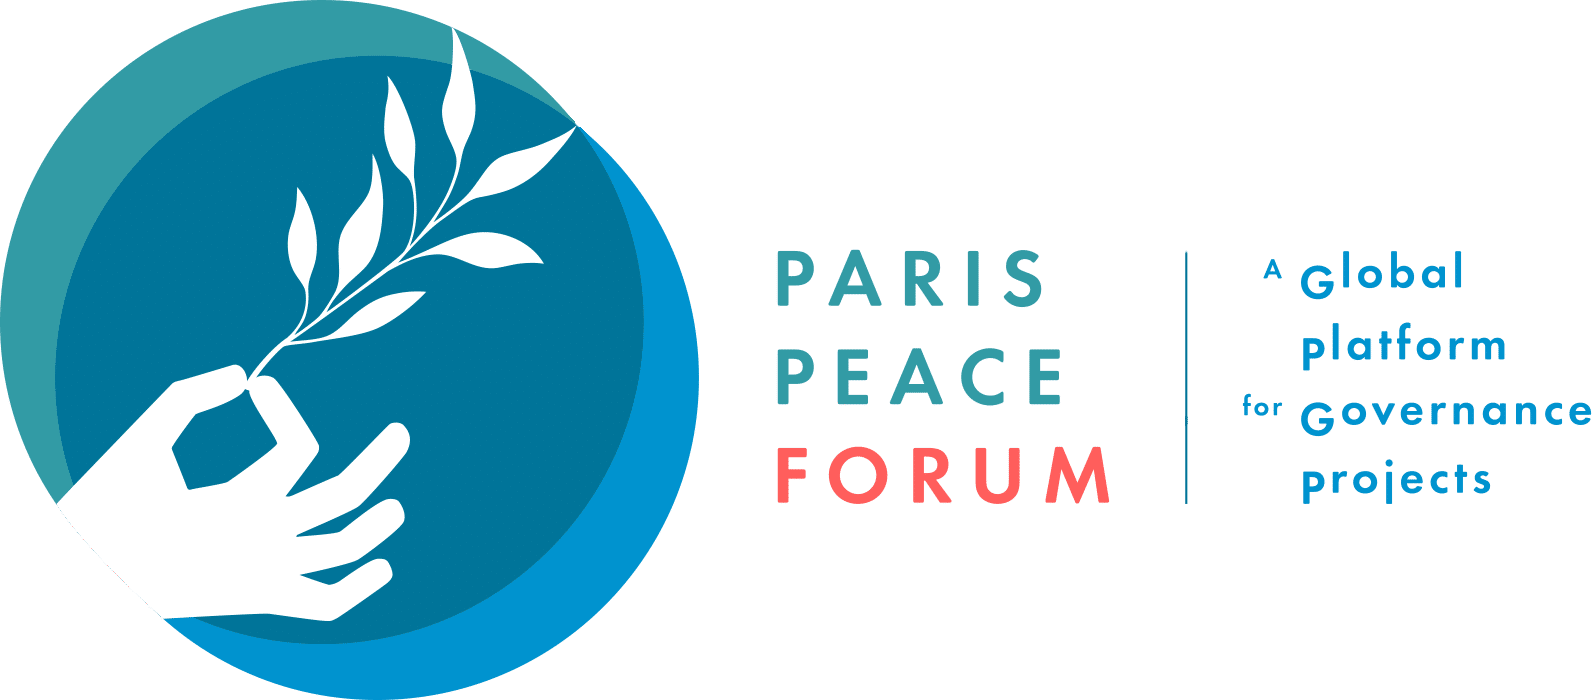 Paris 2018 Logo - Paris Peace Forum / A Global Platform for Governance Projects ...